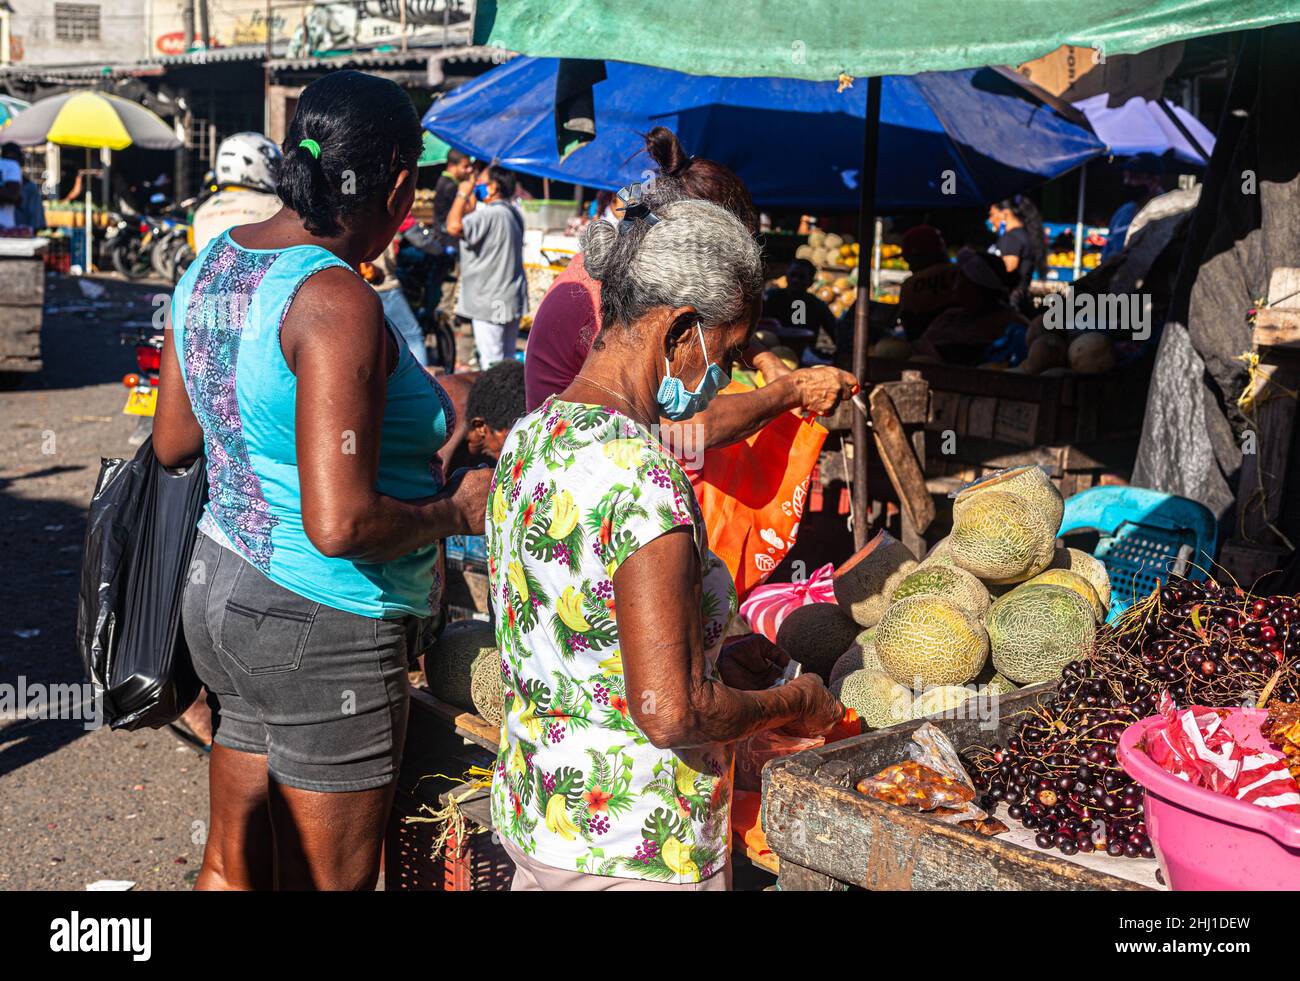 Attività giornaliera in una bancarella di frutta tropicale, Mercado Bazurto, Cartagena de Indias, Colombia. Foto Stock